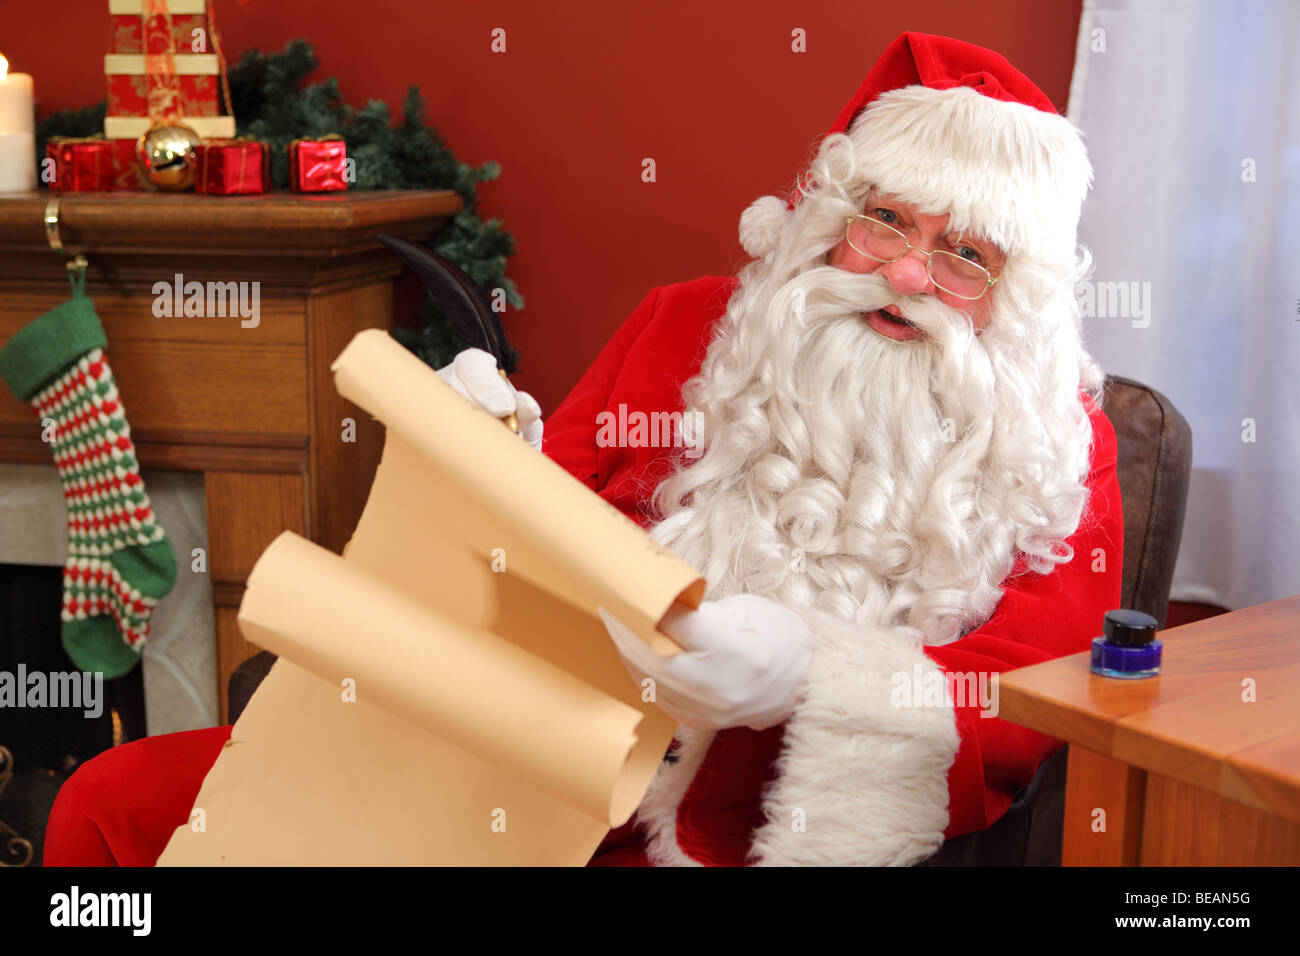 Santa Claus Schreiben Namen auf der Liste Stockfoto